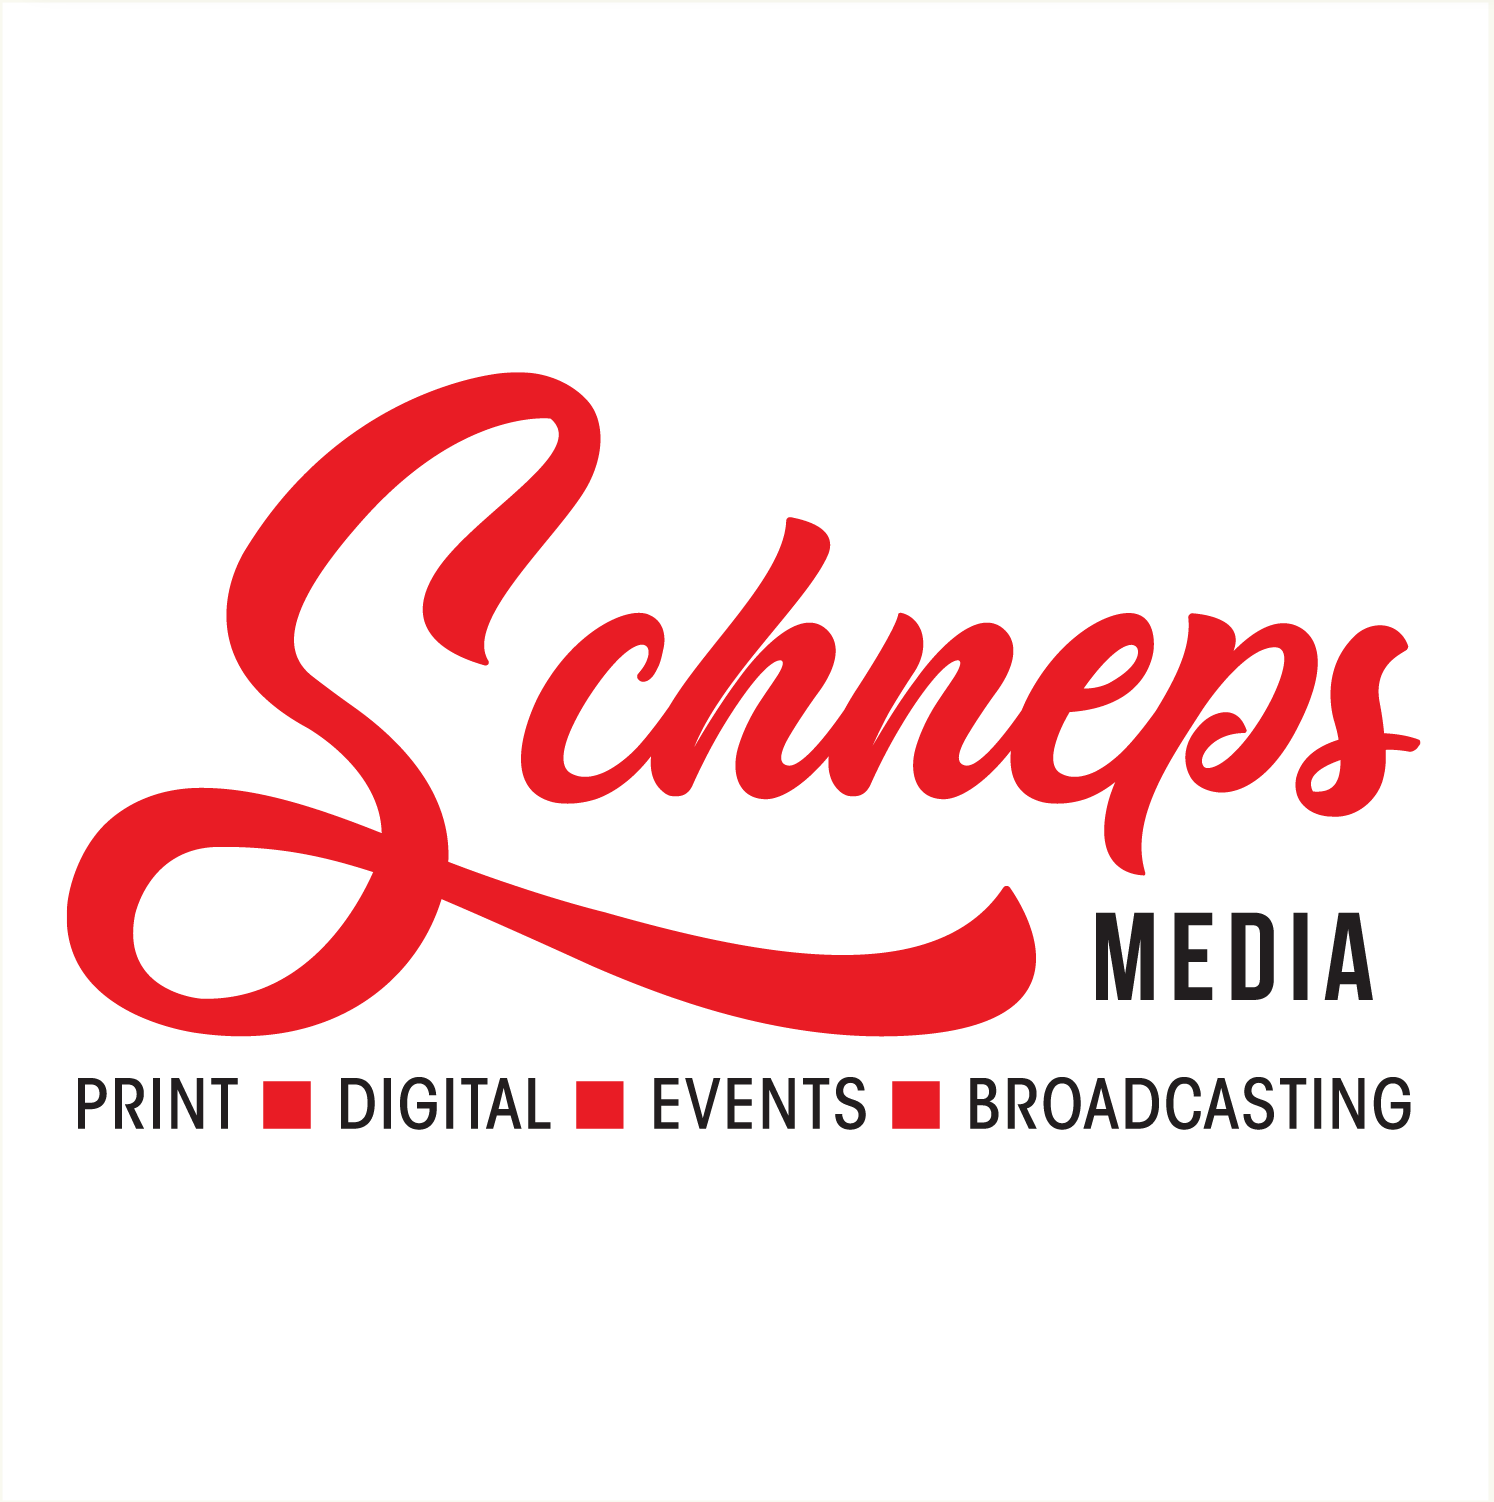 Schneps Media